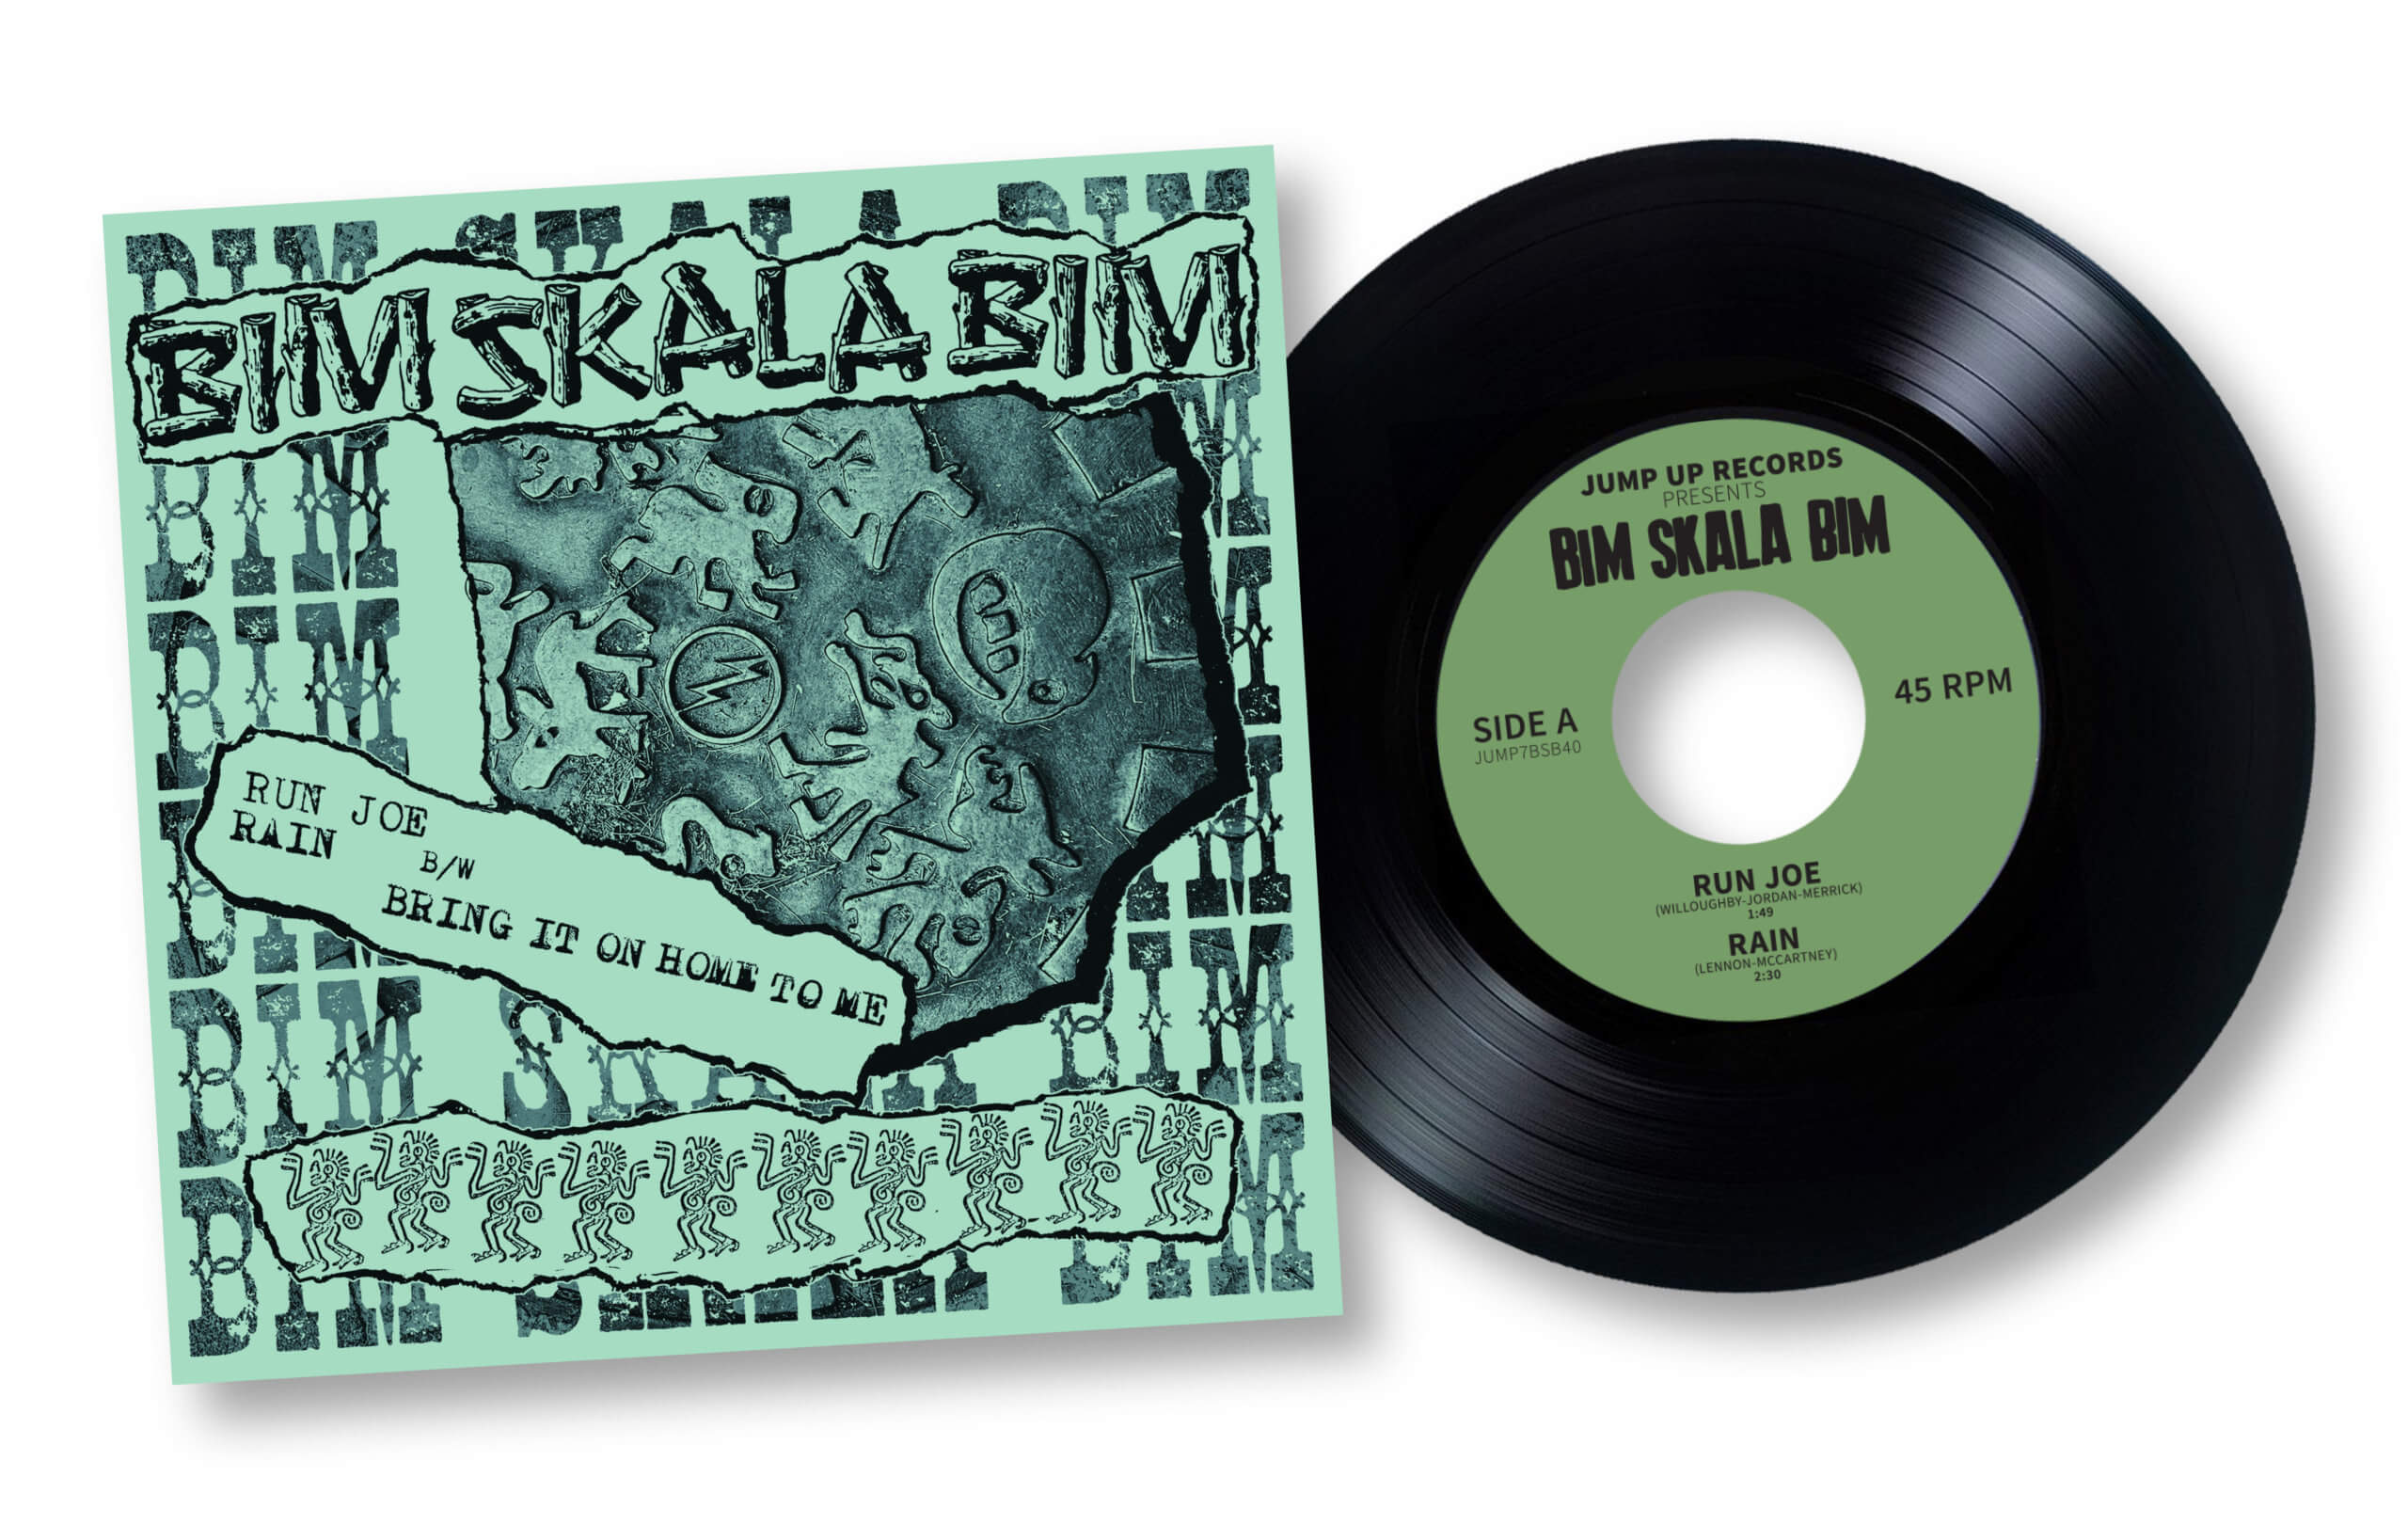 Bim Skala Bim/40TH ANNIVERSARY EP 7